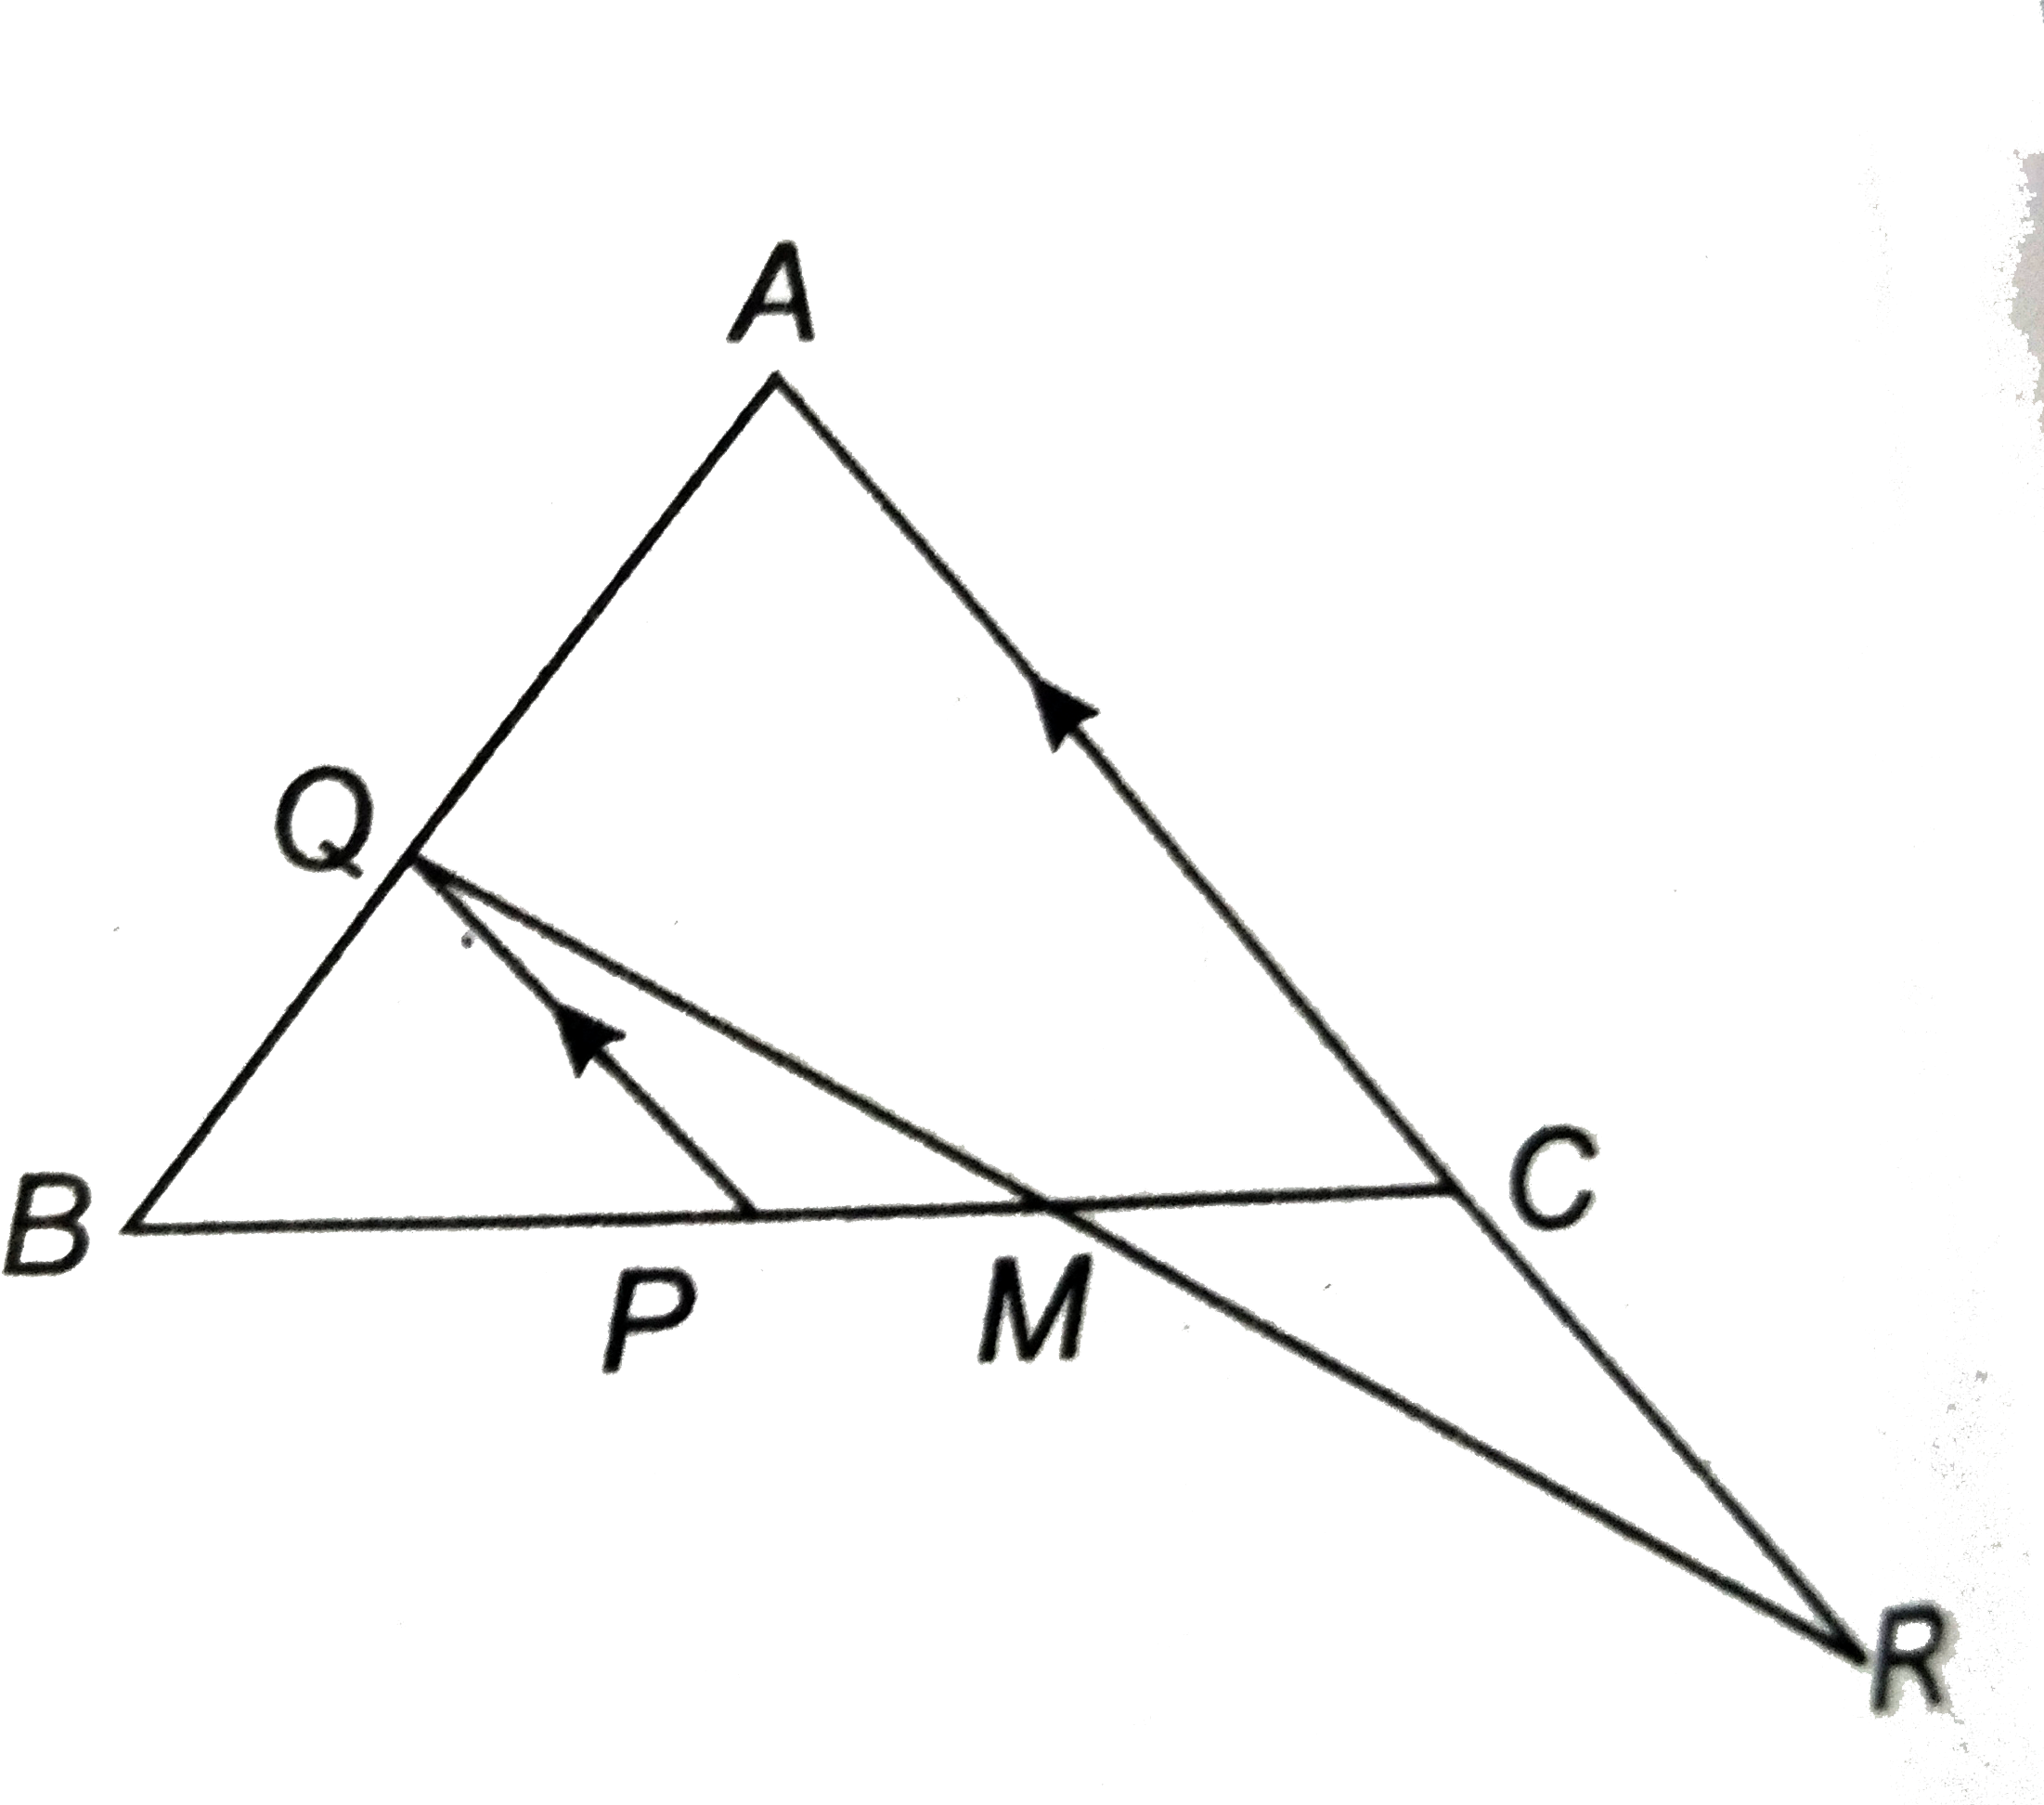 दी आकृति में, ABC एक समबाहु त्रिभुज है, PQ||AC और AC को R तक इस प्रकार बढ़ाया गया है कि CR = BP है। सिद्ध कीजिए कि QR, PC को समद्विभाजित करती है।